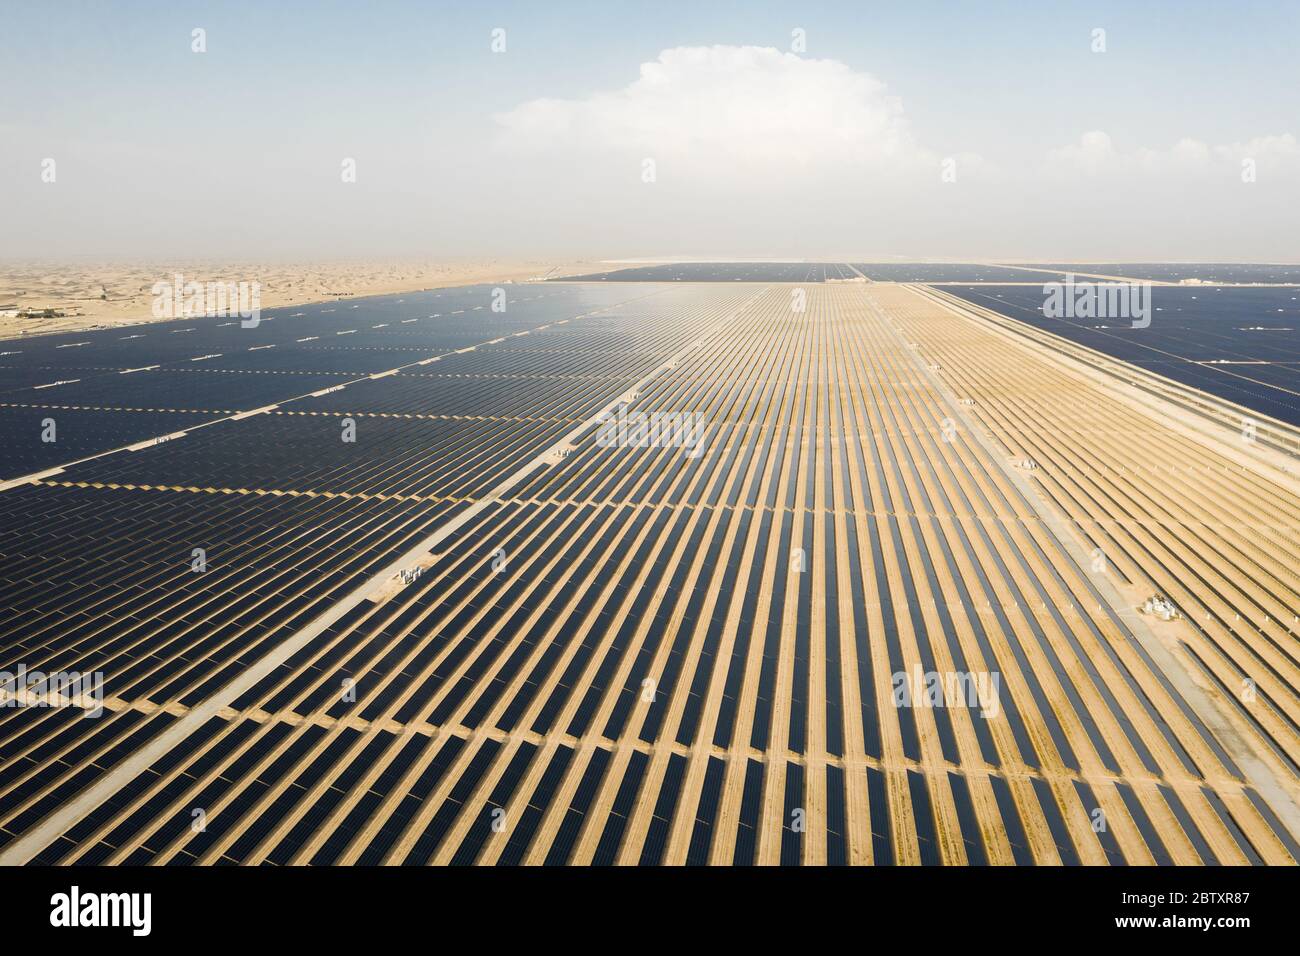 Vue aérienne d'un paysage avec une ferme de panneaux solaires photovoltaïques produisant une énergie renouvelable durable dans une centrale électrique désertique. Banque D'Images